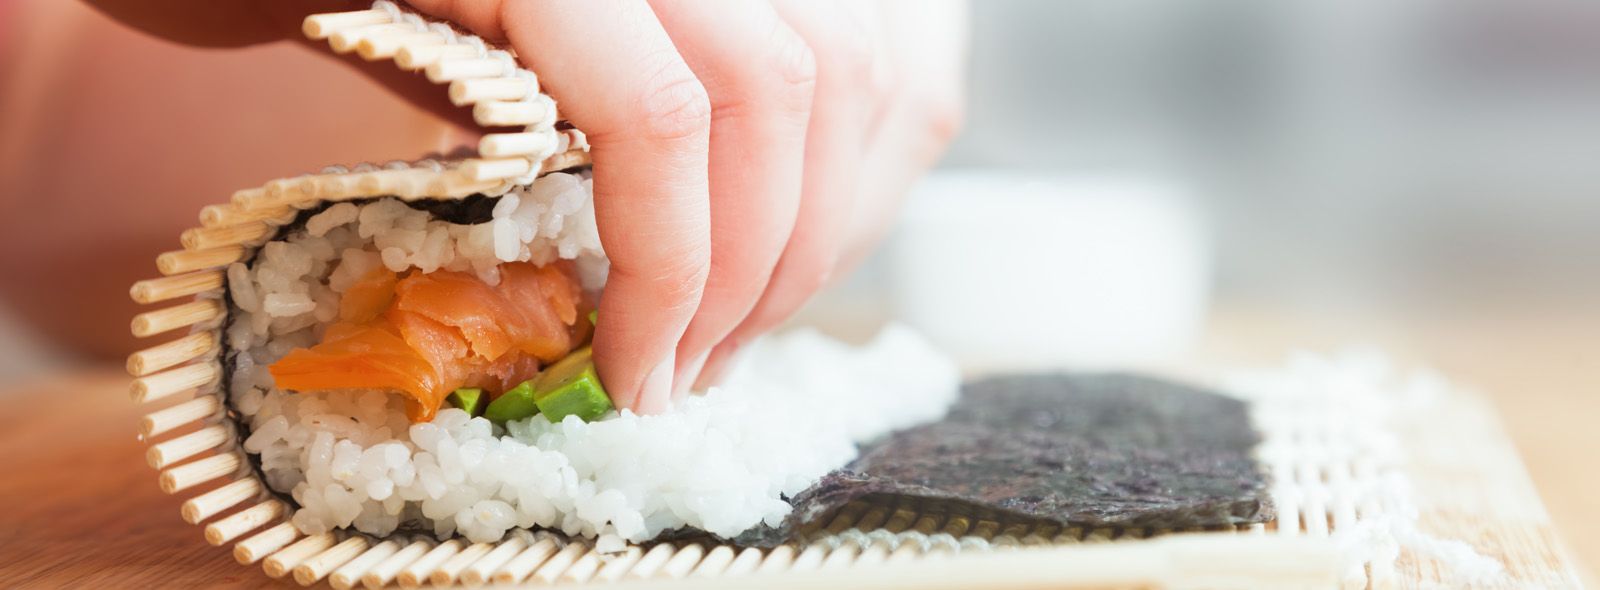 Come fare il sushi a casa